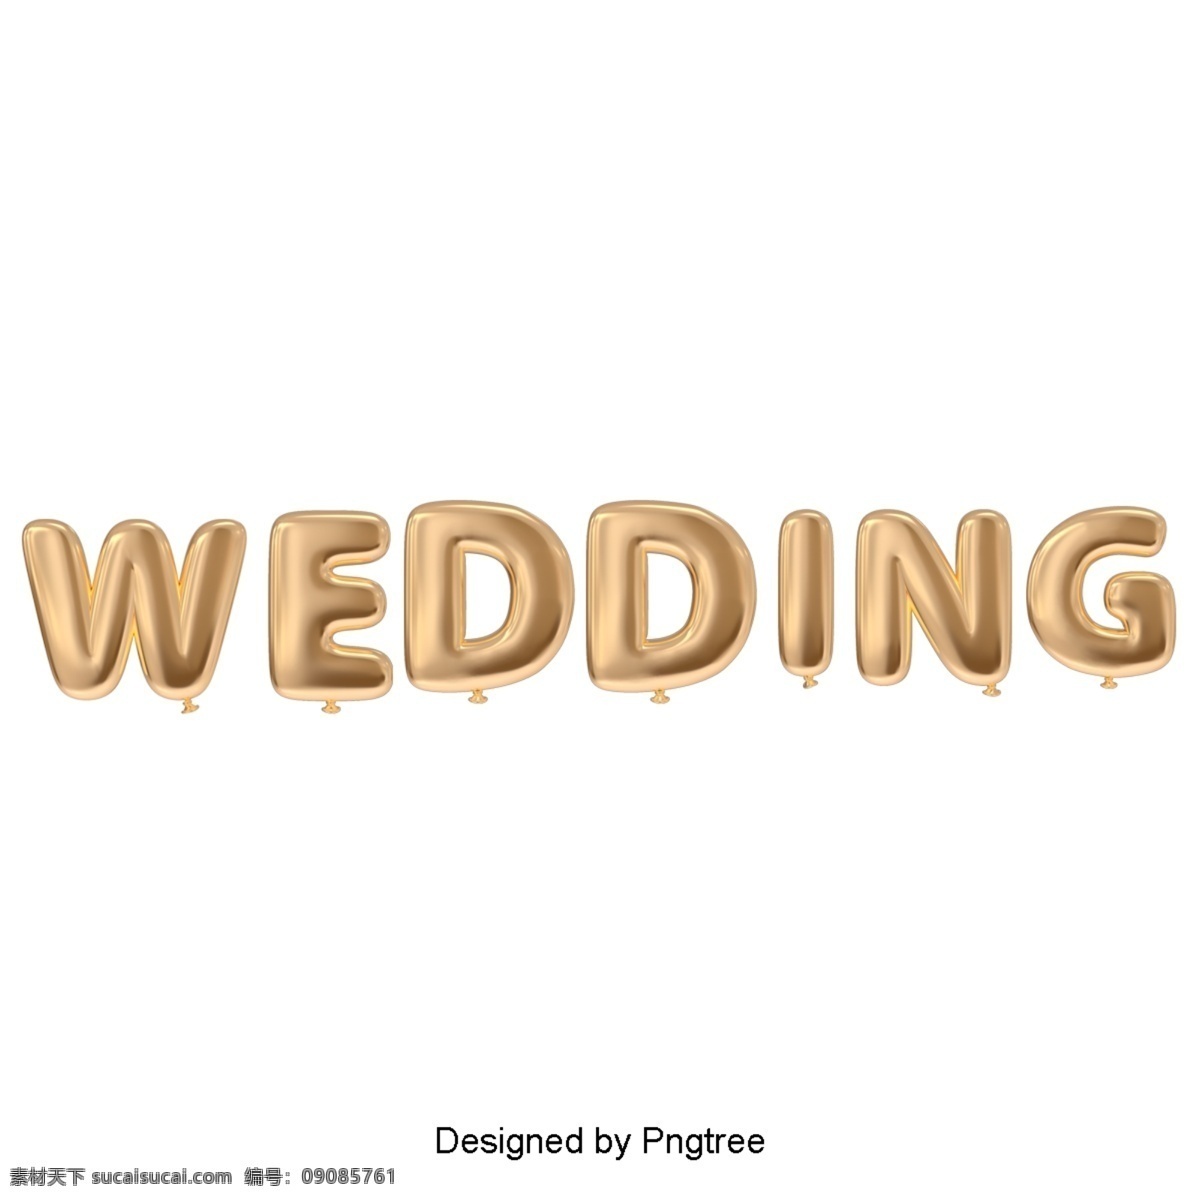 金色 气球 婚礼 字体 婚礼派对 金 金色字体 手写 闪亮的 亮 幸福 豪华 时尚 经典